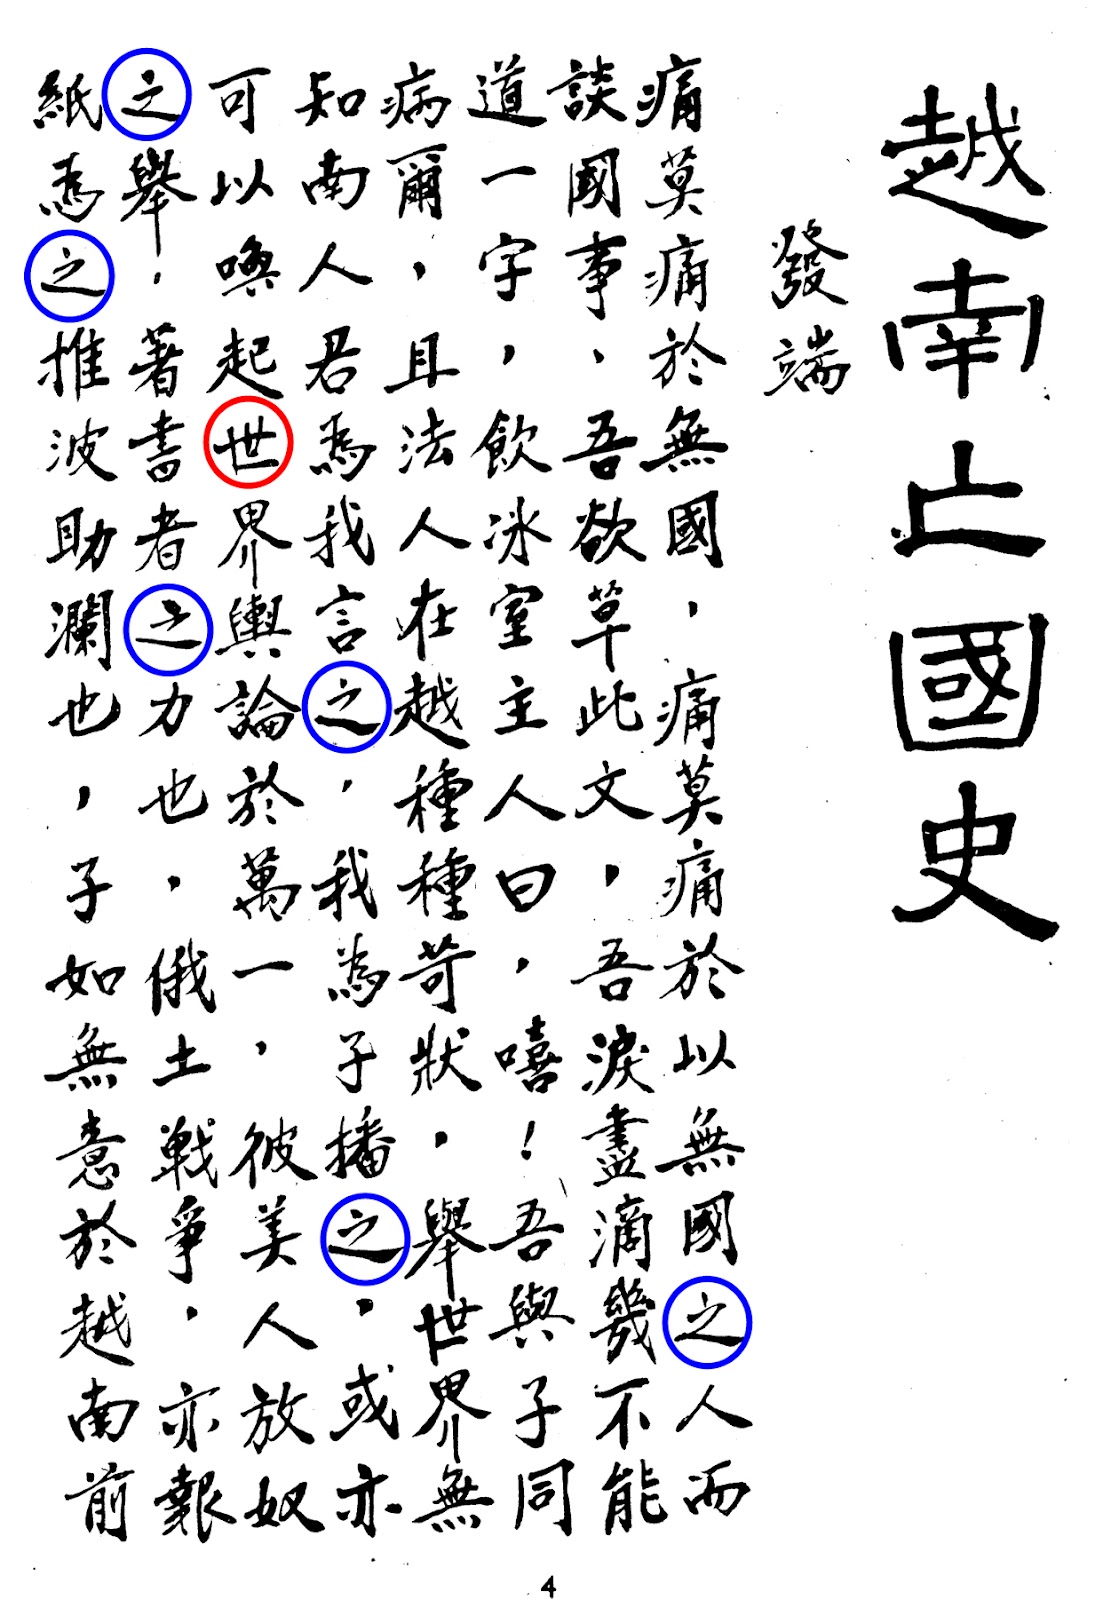 Trang 4, phần chữ Hán, Việt Nam Vong Quốc Sử.jpg